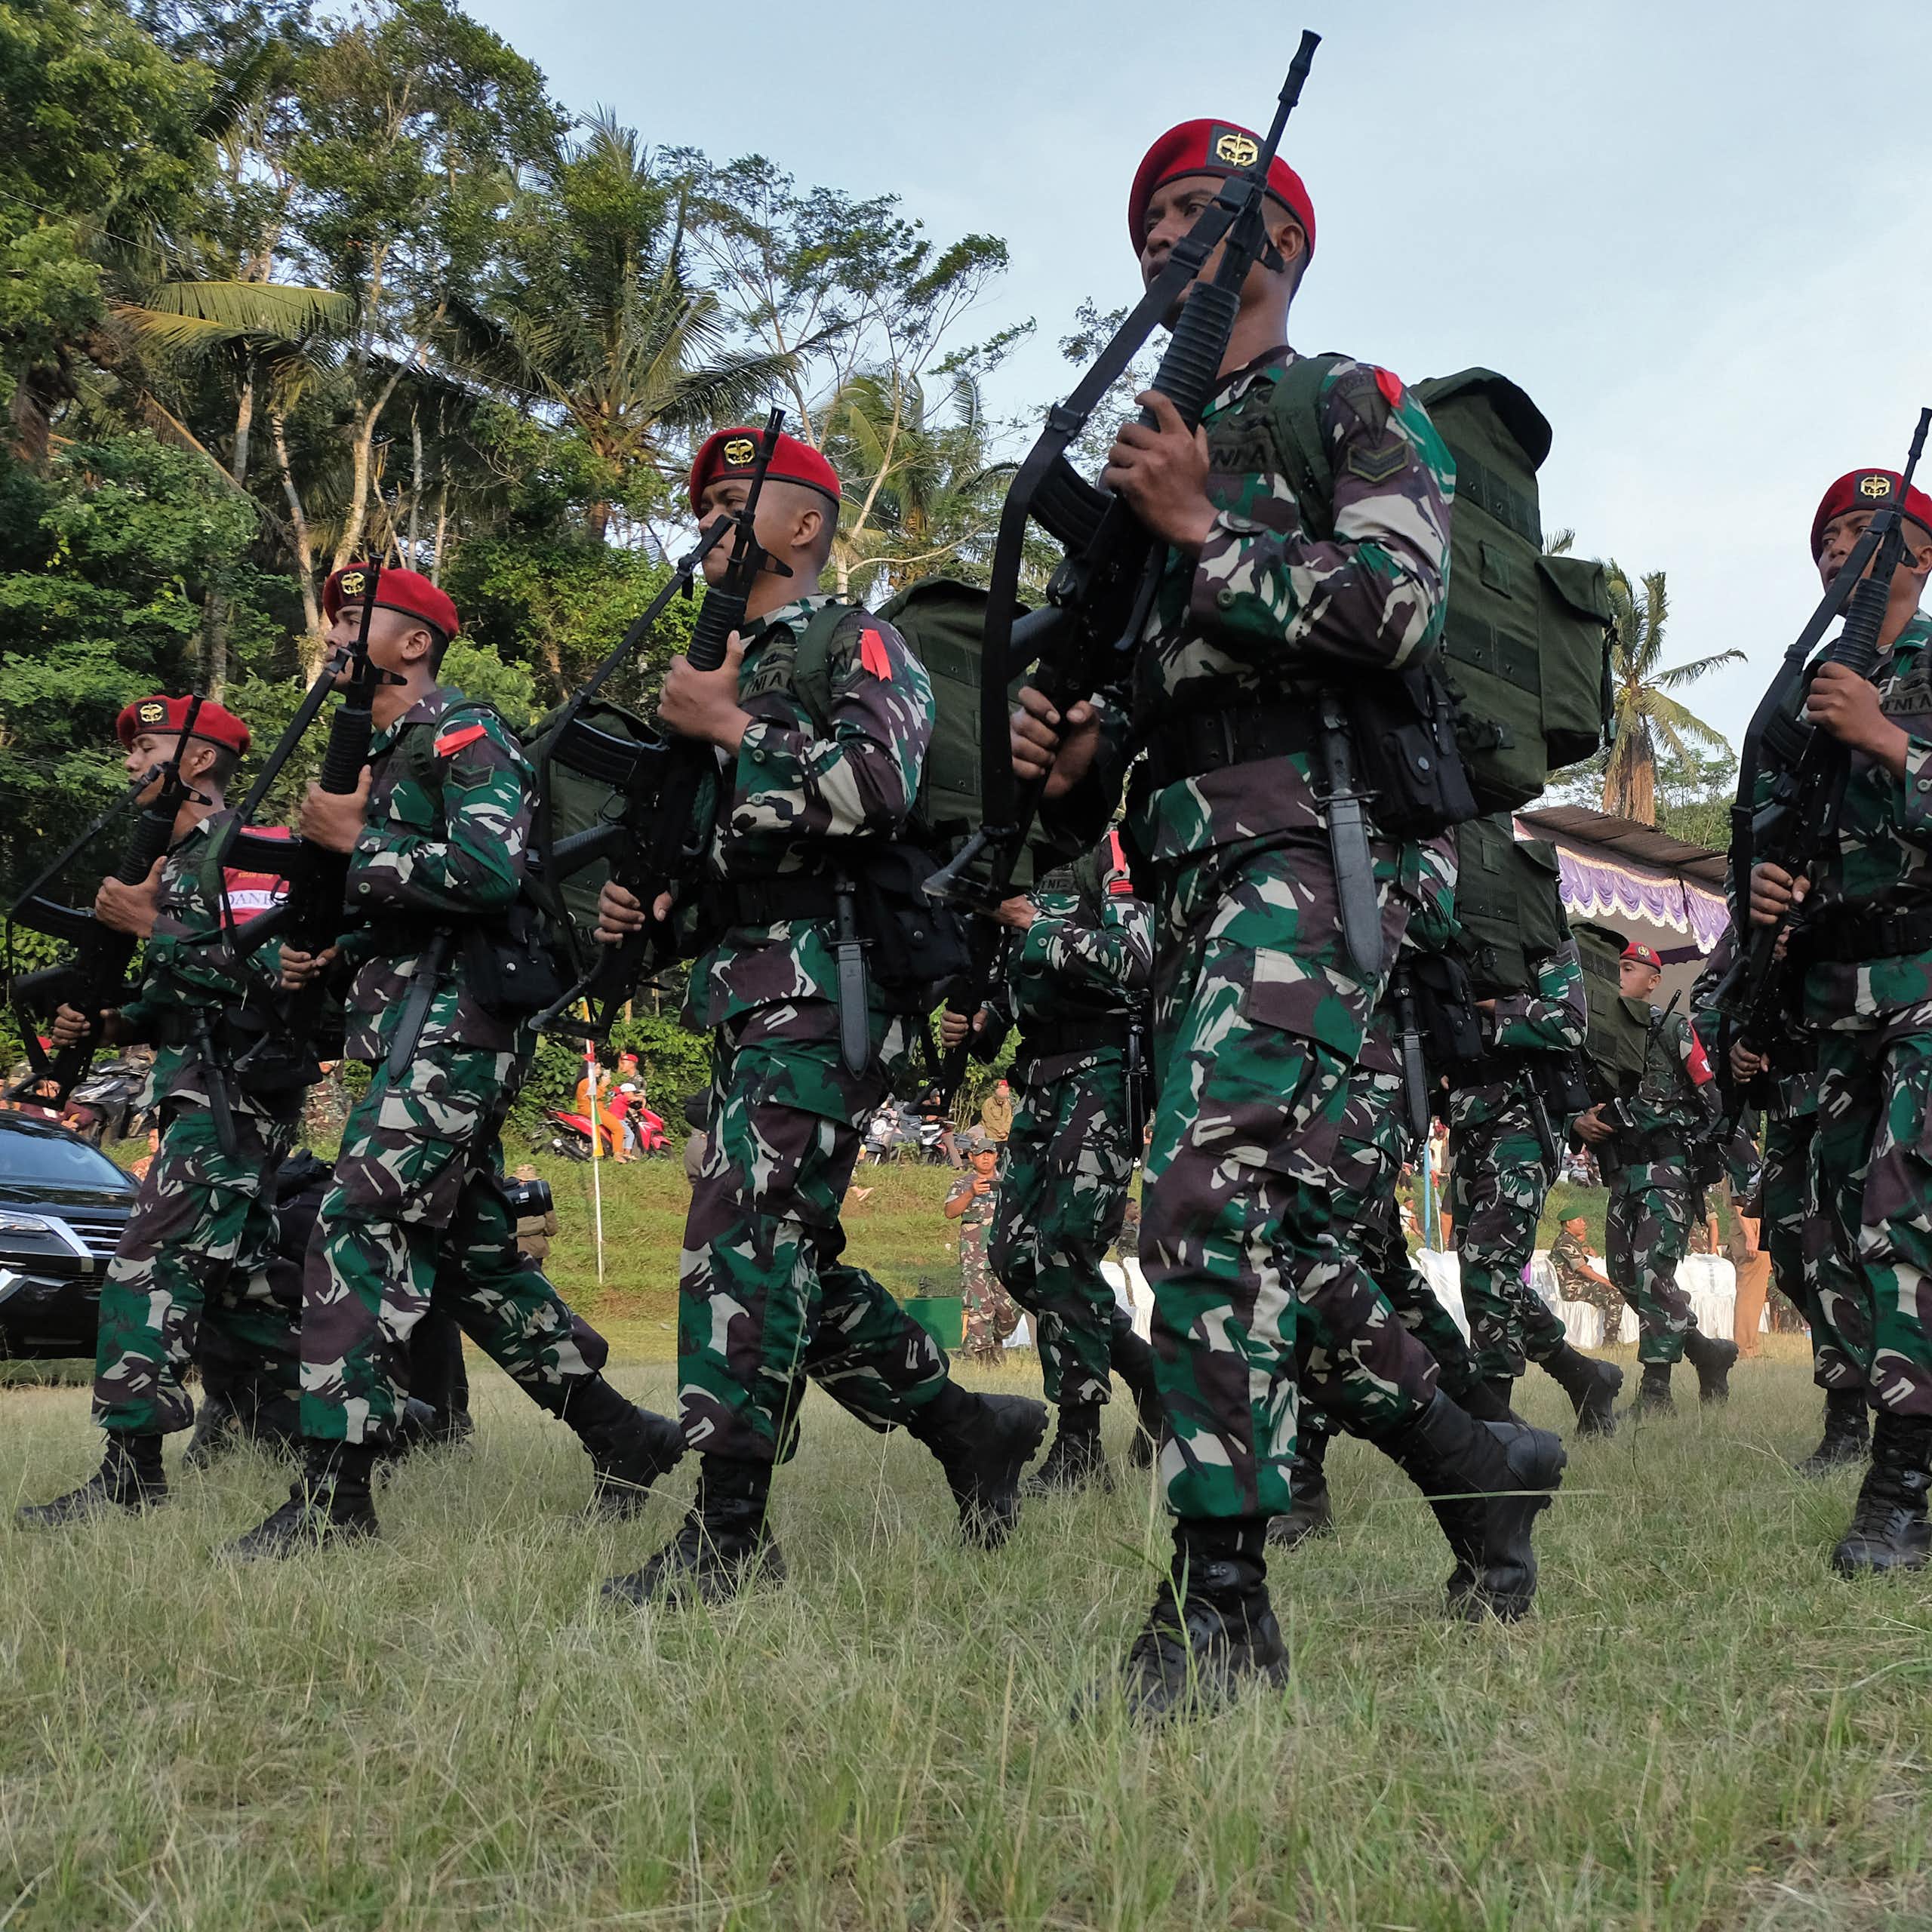 Mengapa militer lekat dengan citra represif? Menelisik sejarah militerisme Indonesia, Myanmar dan Thailand